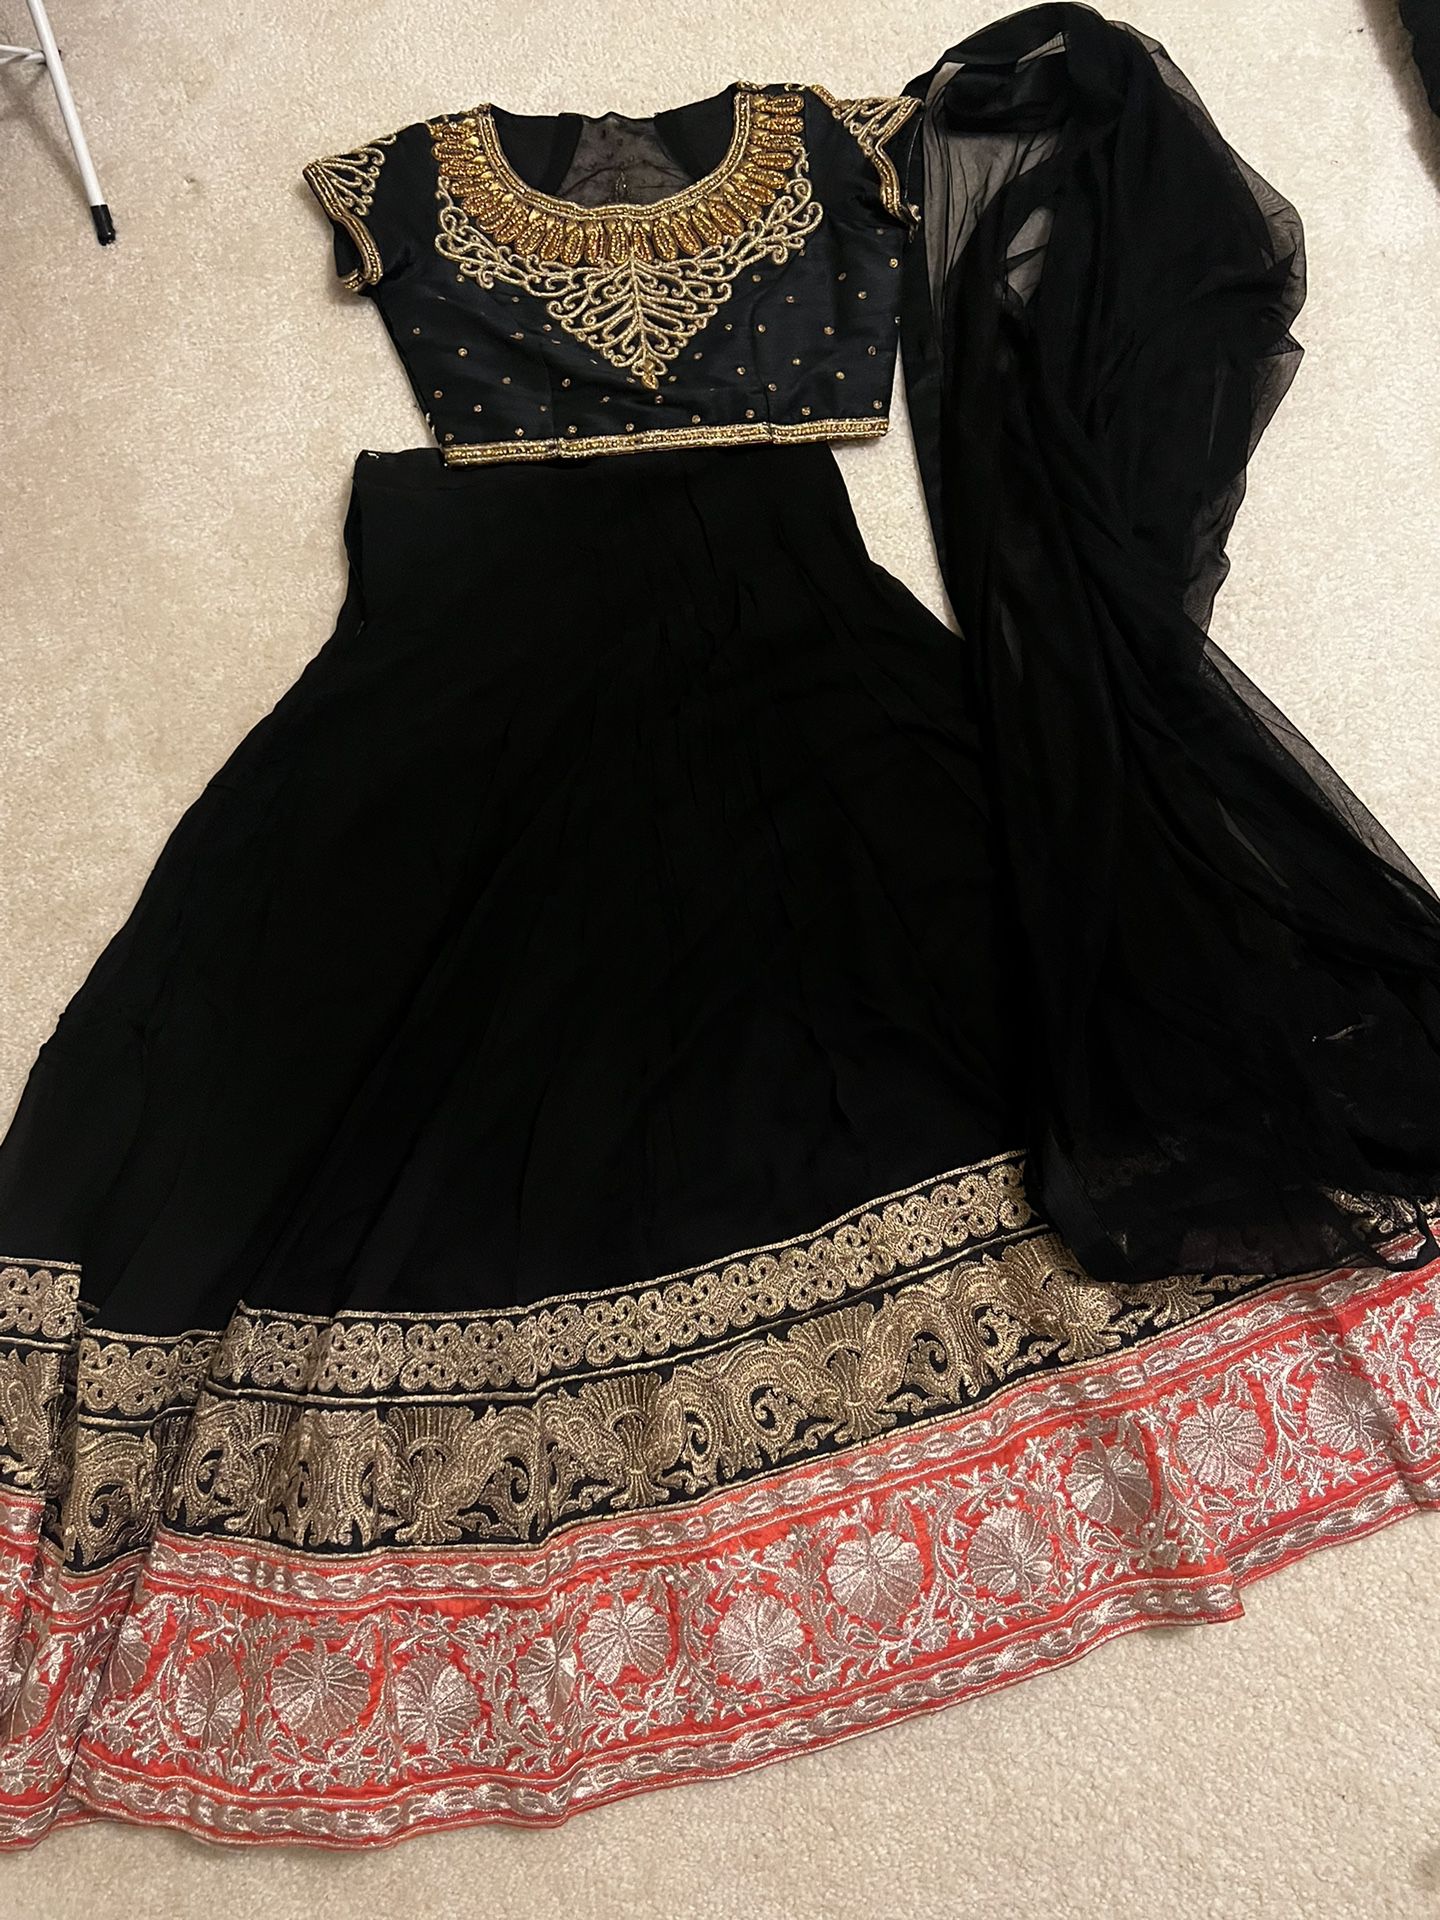 Desi/Indian Dress 